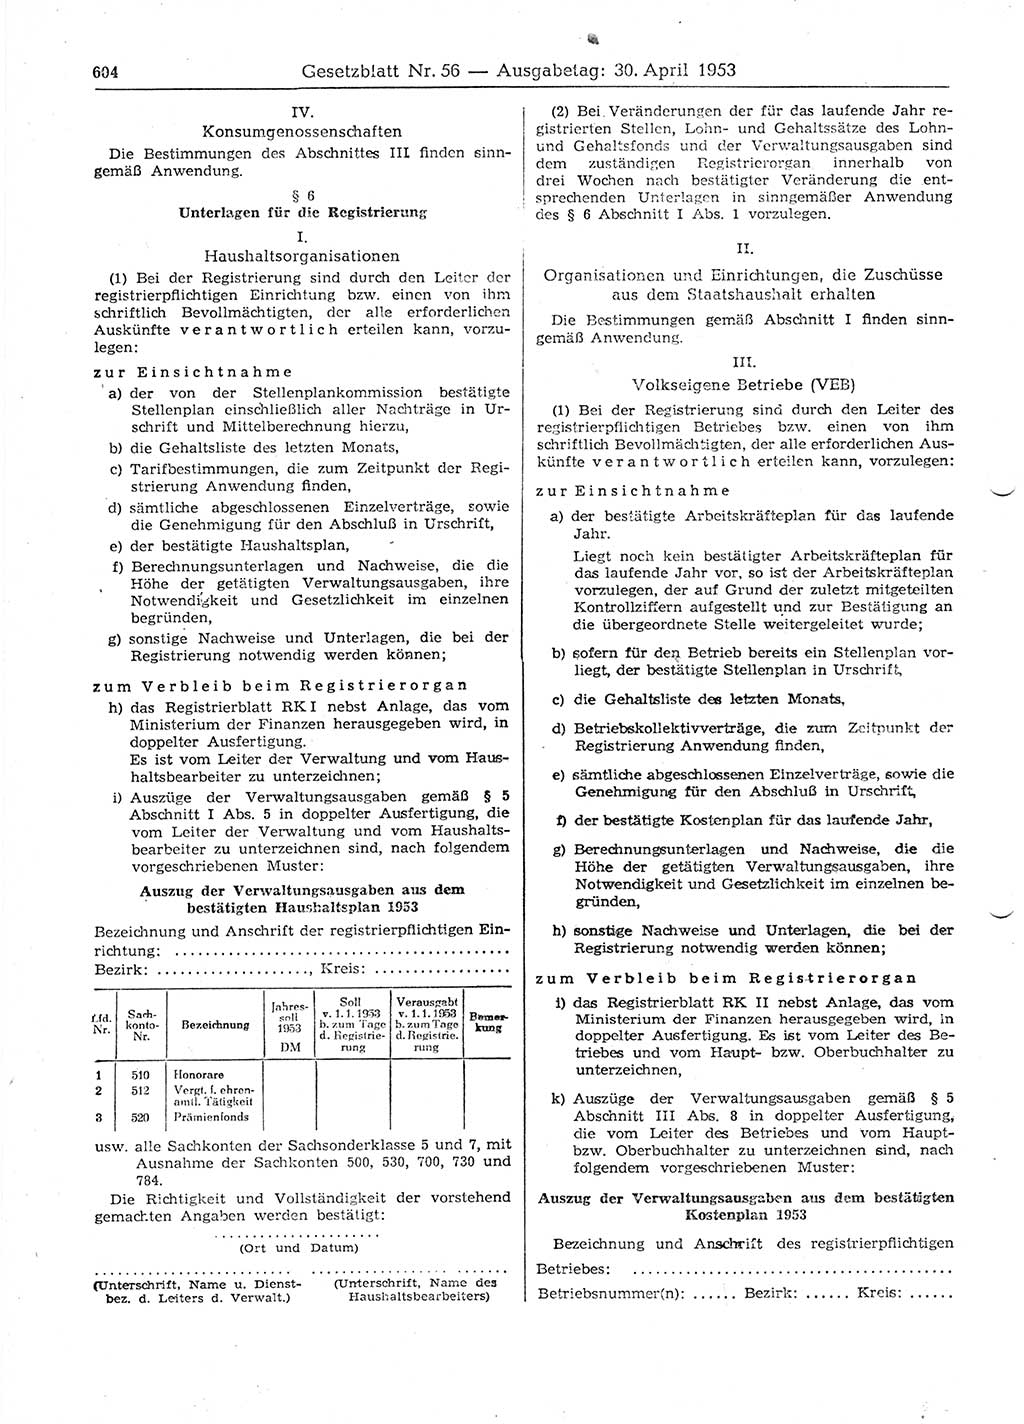 Gesetzblatt (GBl.) der Deutschen Demokratischen Republik (DDR) 1953, Seite 604 (GBl. DDR 1953, S. 604)